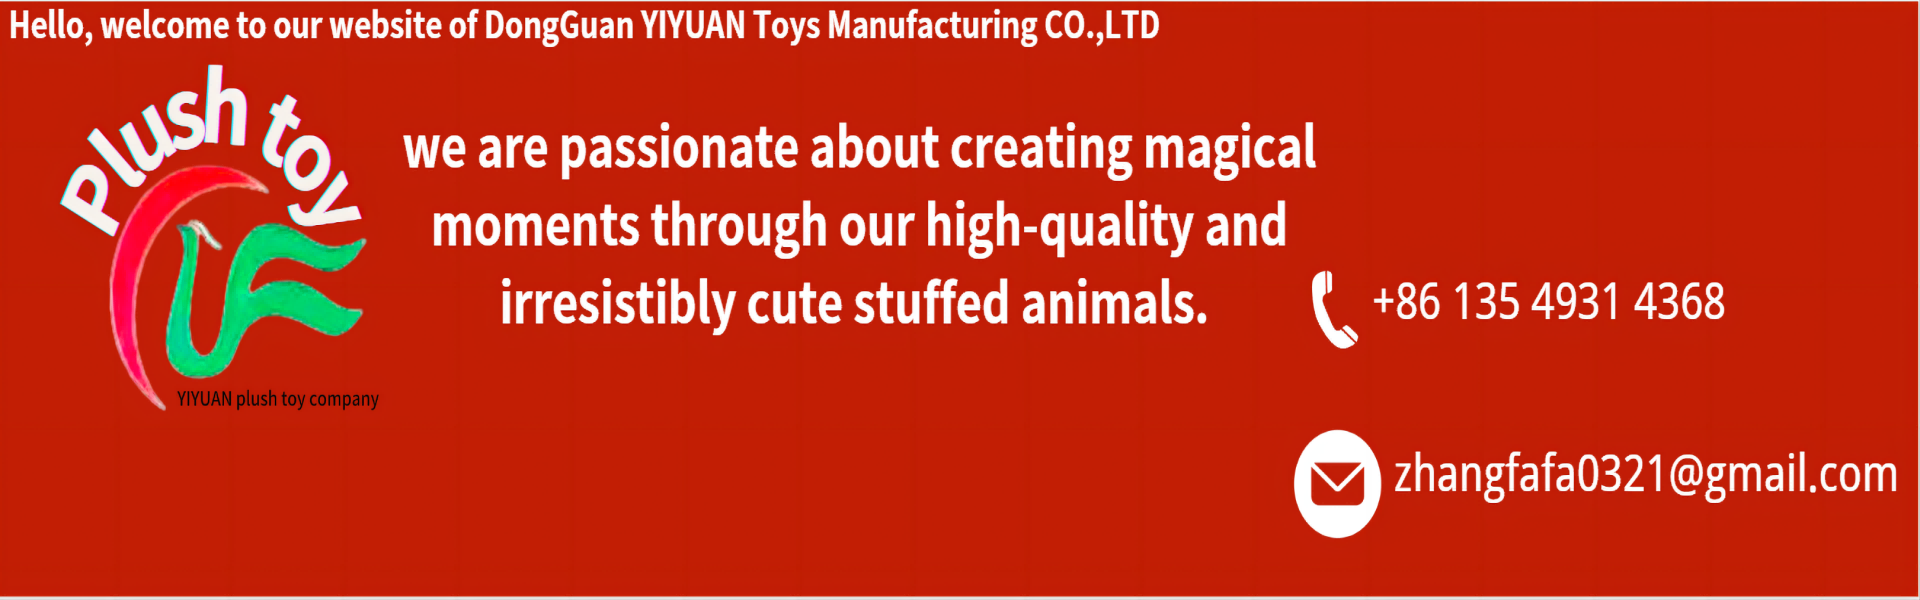 Plush Toy, Ardchaighdeán, Foirne Gairmiúla,yiyuan plush toy company